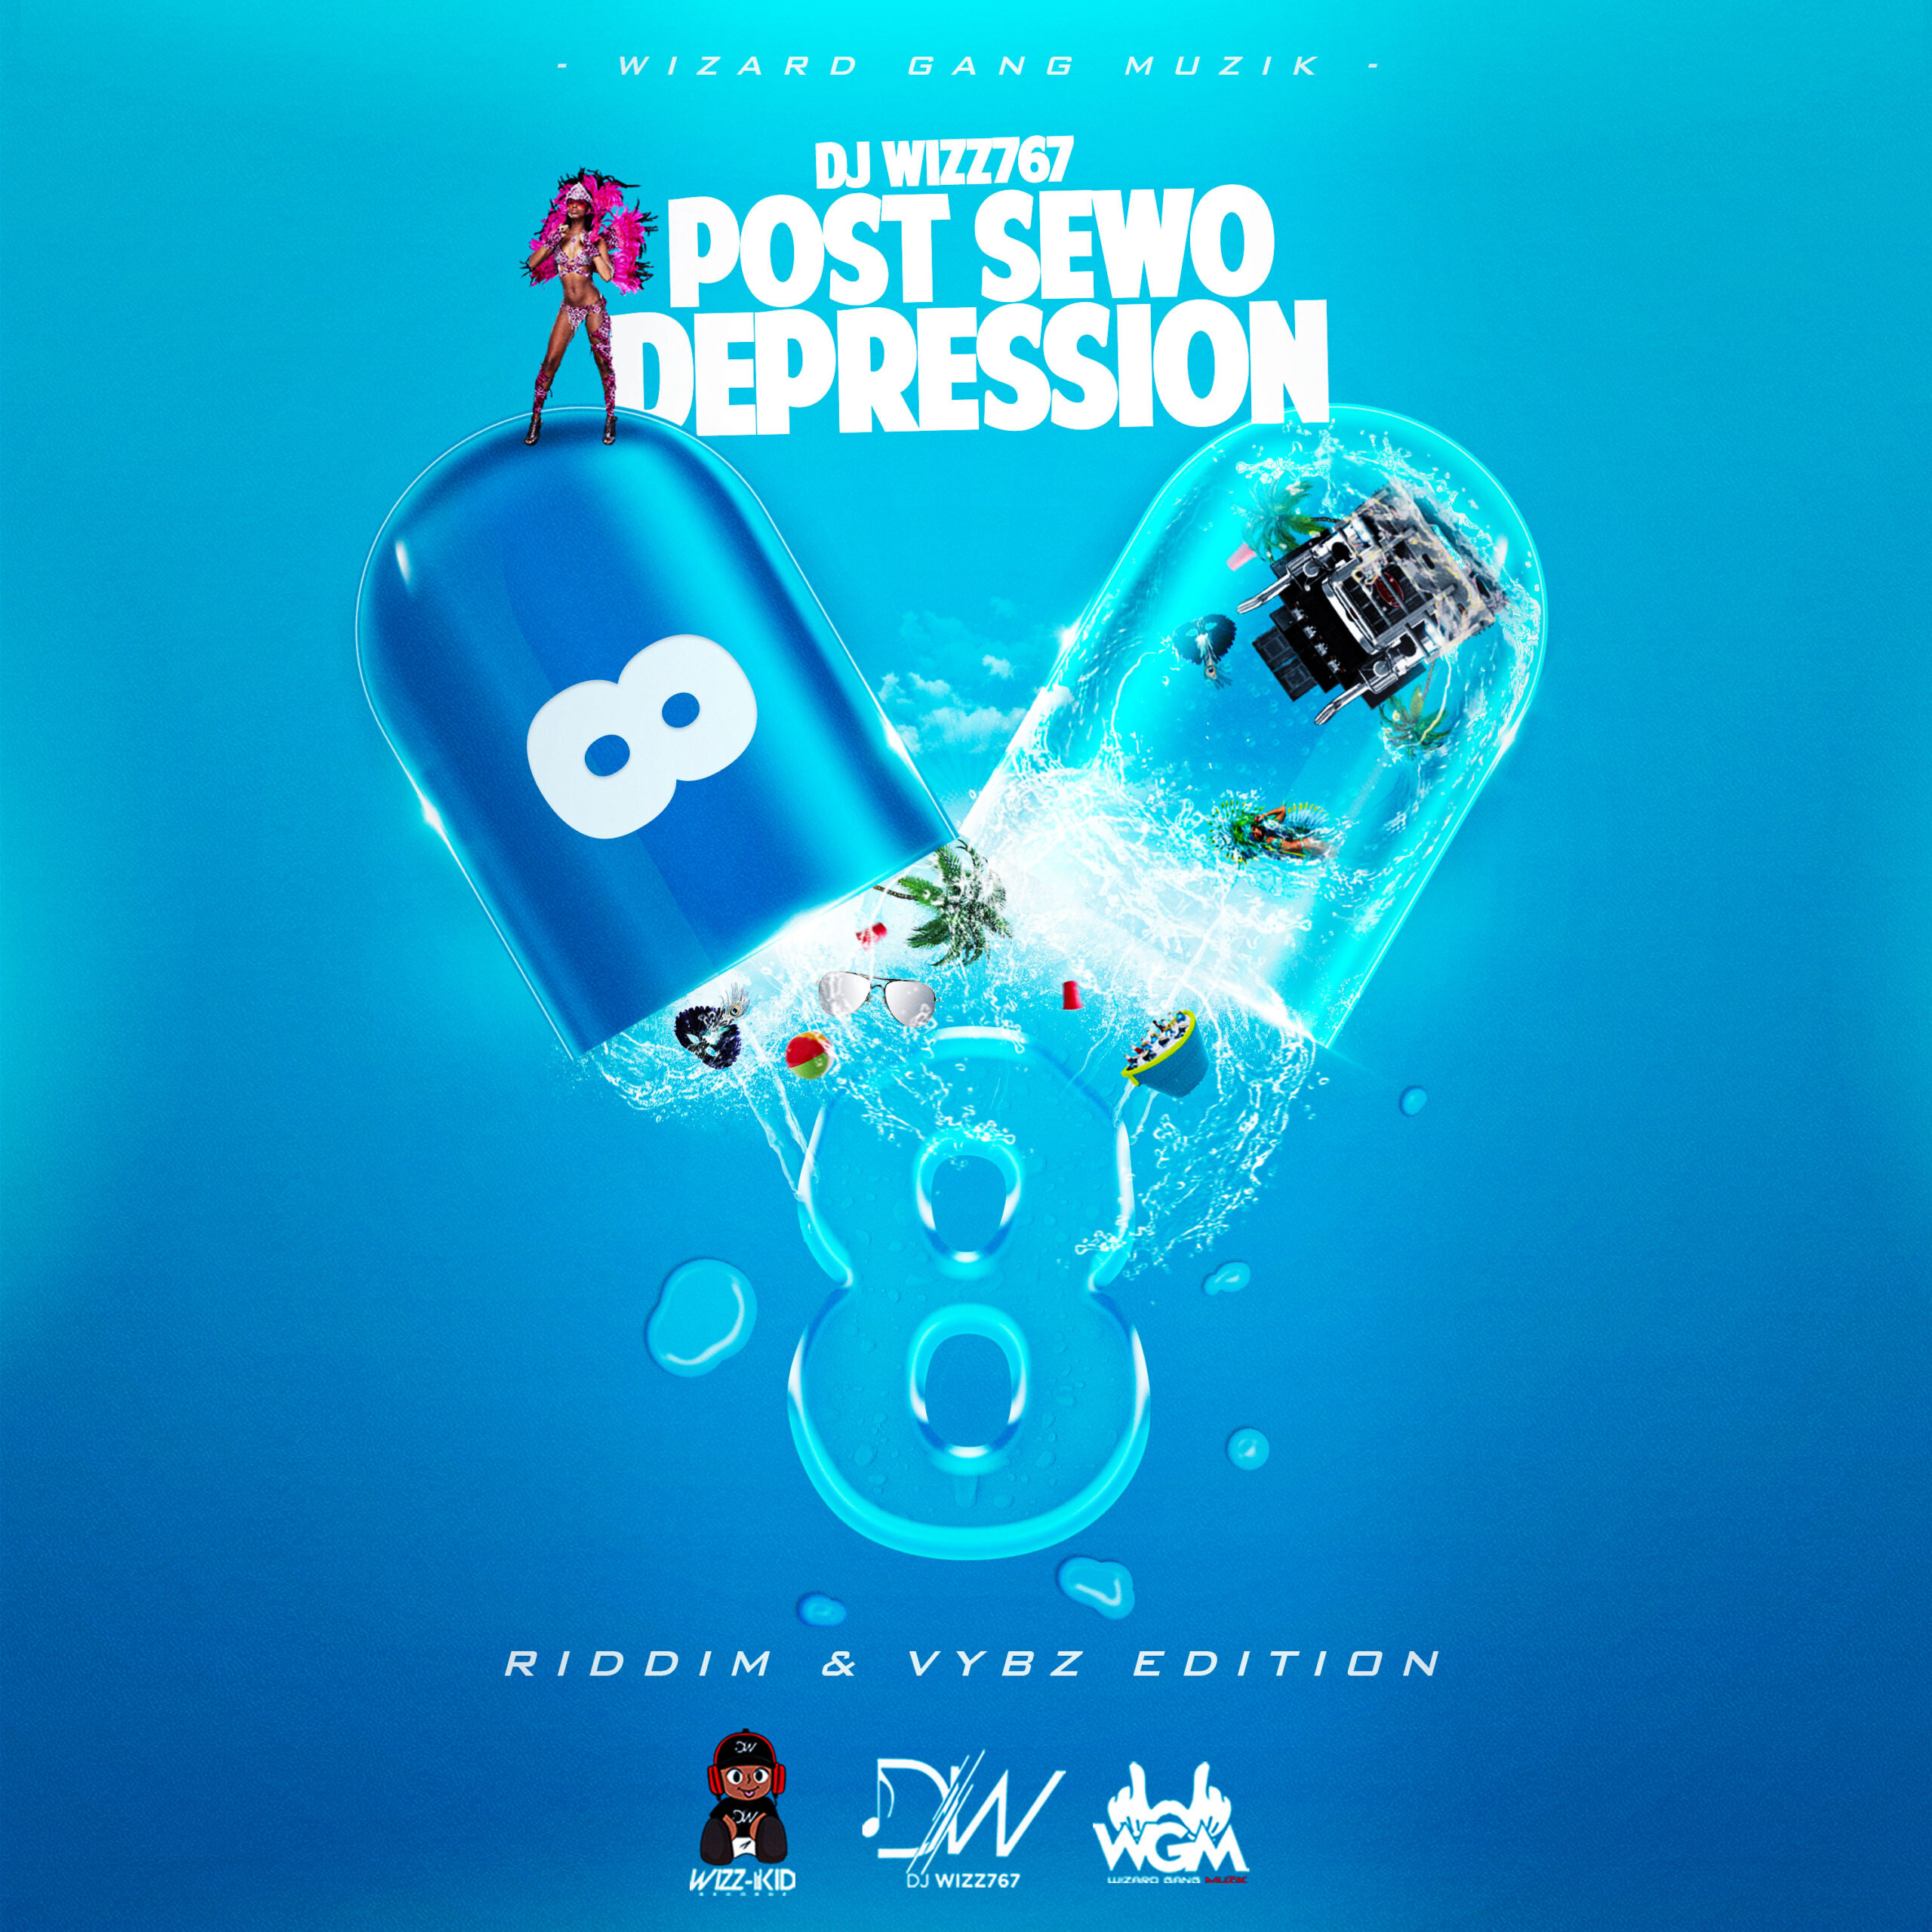 Dj Wizz767 – Post Sewo Depression 8 (Riddim & Vybz Edition)